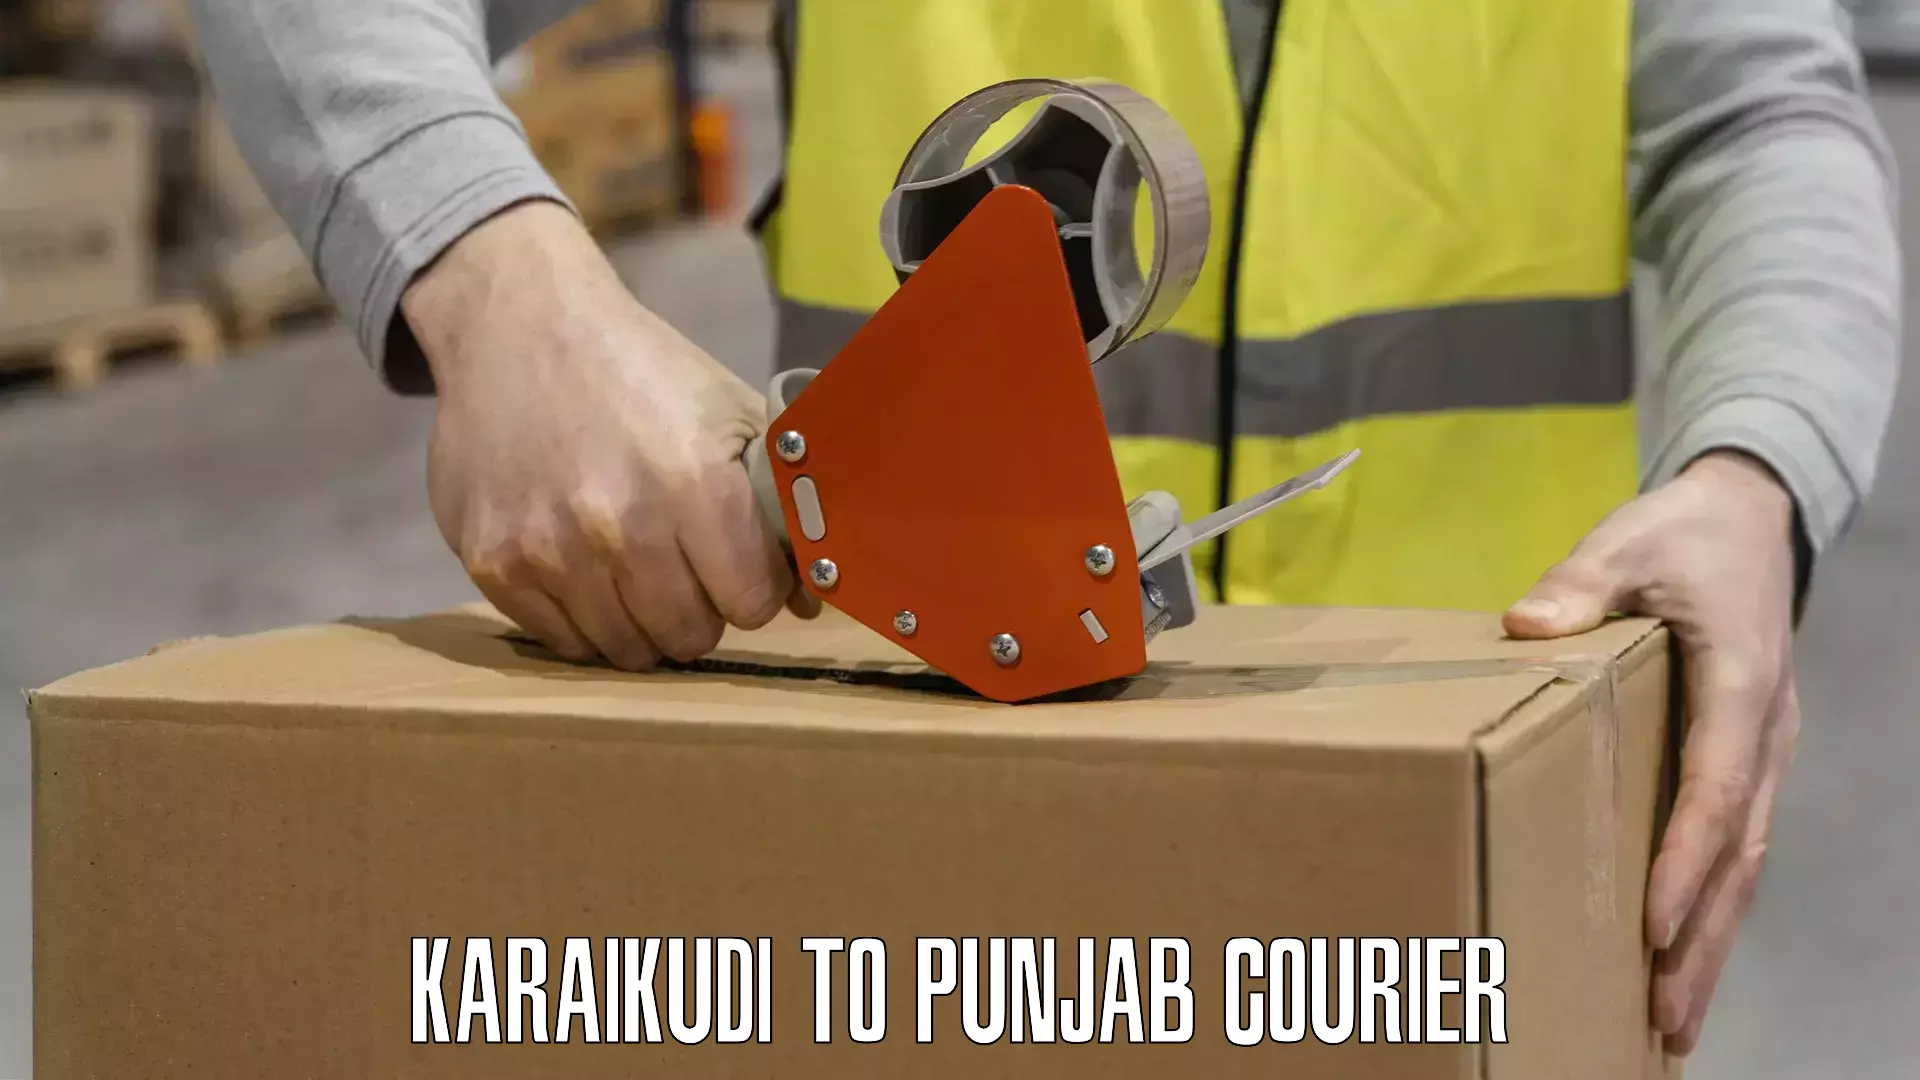 Corporate courier solutions Karaikudi to Faridkot